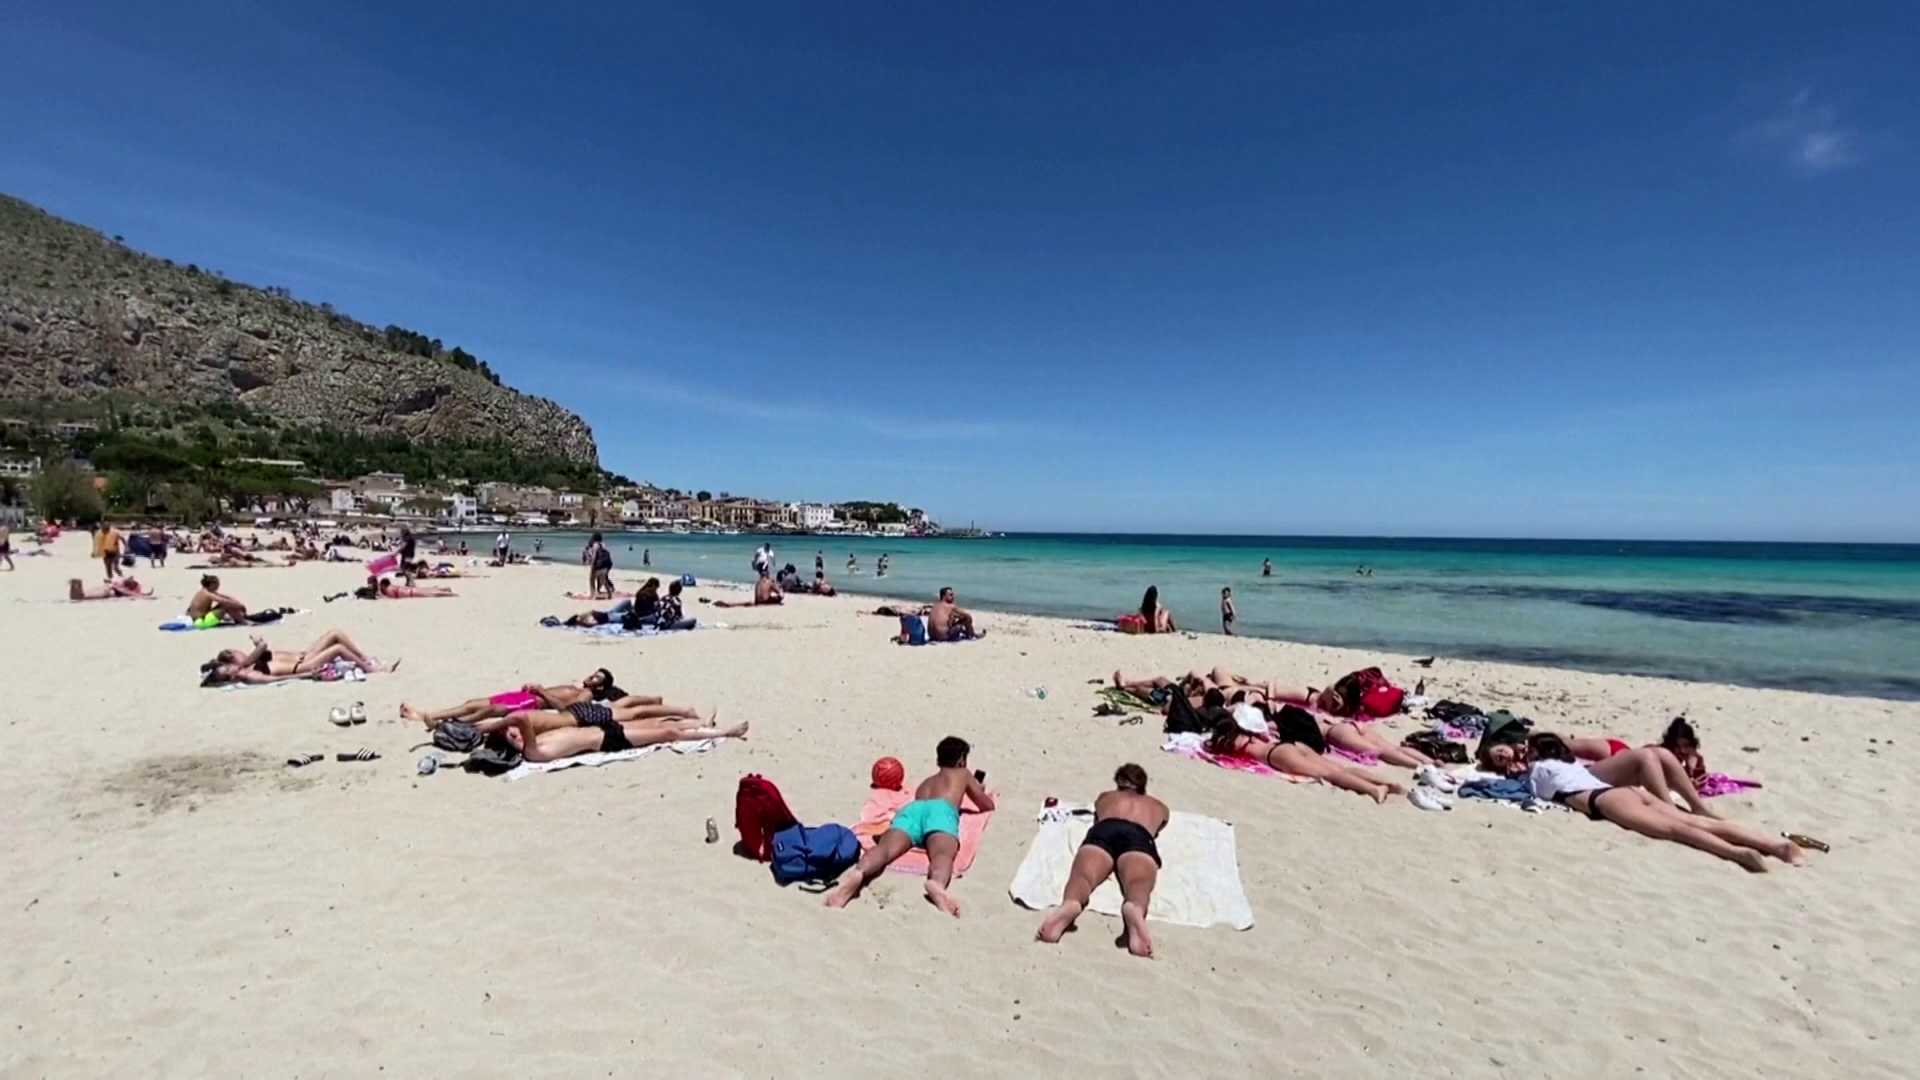 Baktériumfertőzés miatt tilos a fürdés 14 olasz tengerparton 